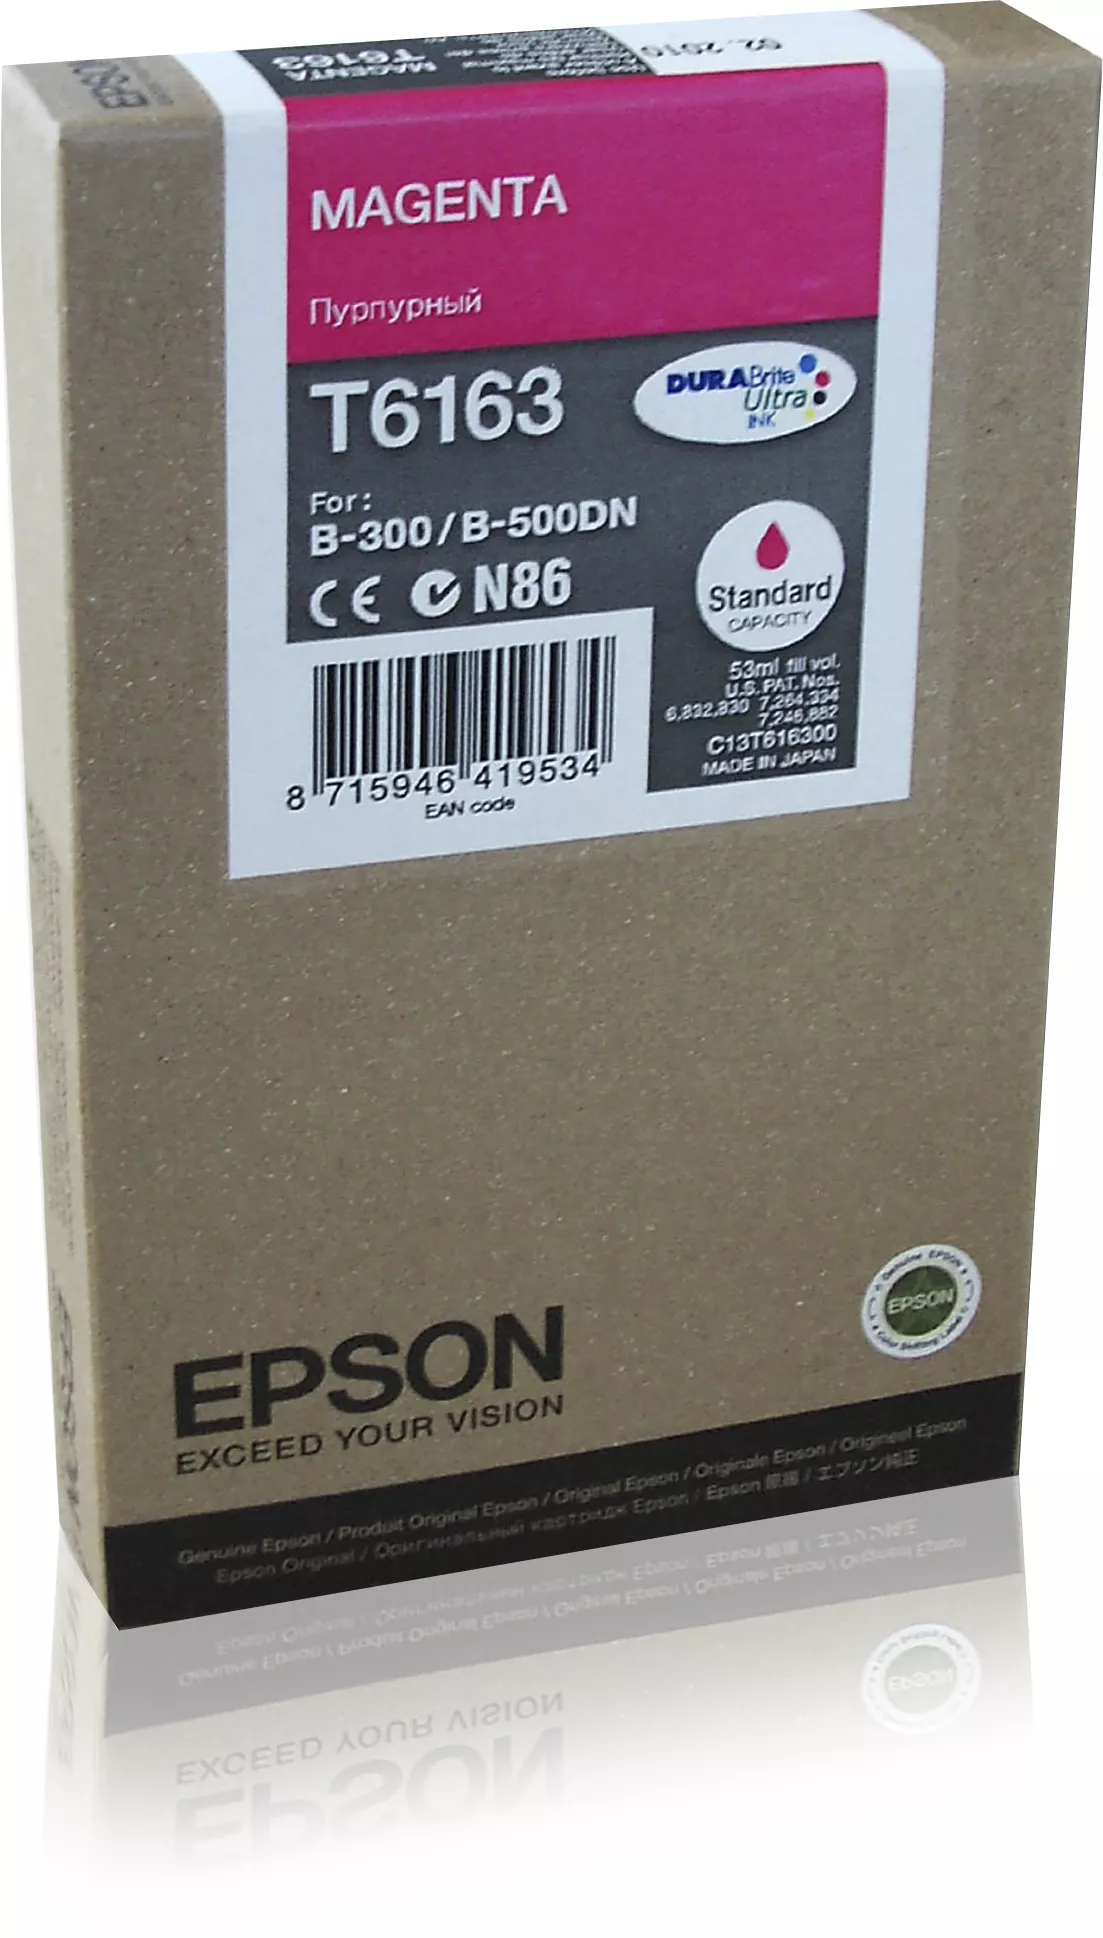 Achat EPSON T6163 cartouche de encre magenta capacité standard sur hello RSE